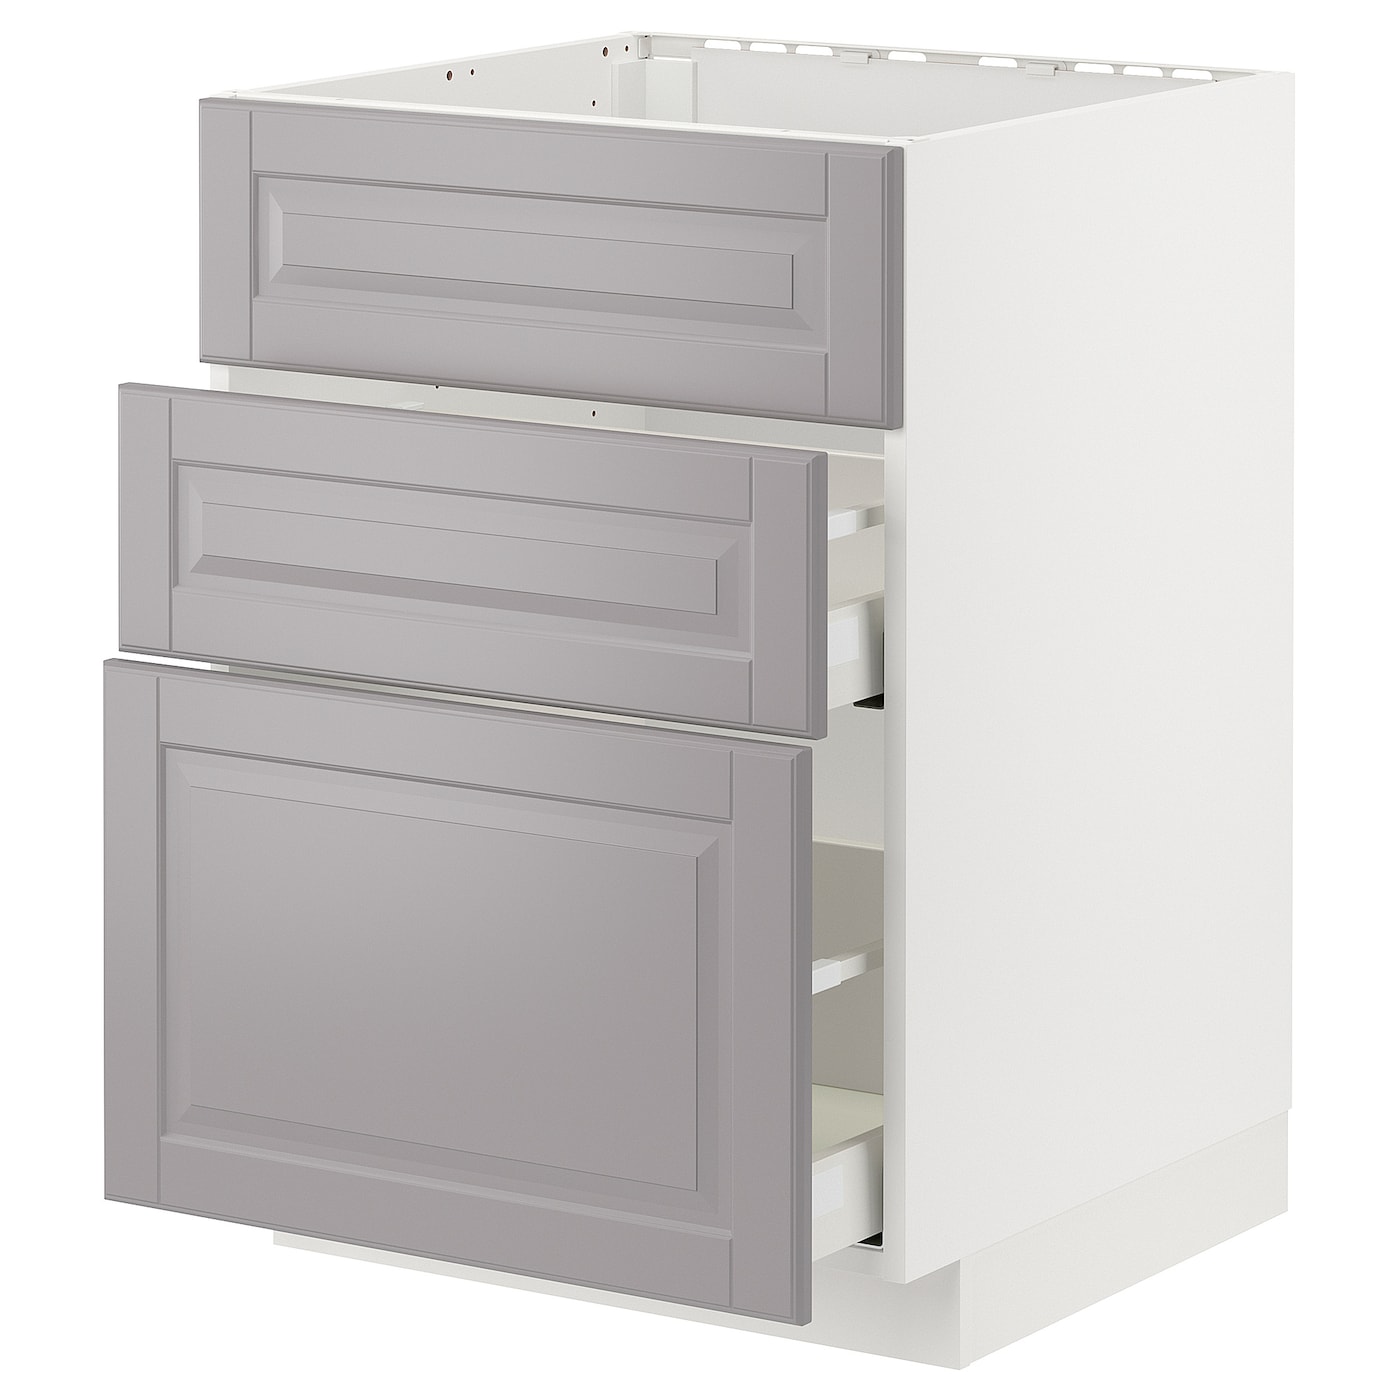 Напольный шкаф - IKEA METOD MAXIMERA, 80x62x60см, белый/серый, МЕТОД МАКСИМЕРА ИКЕА